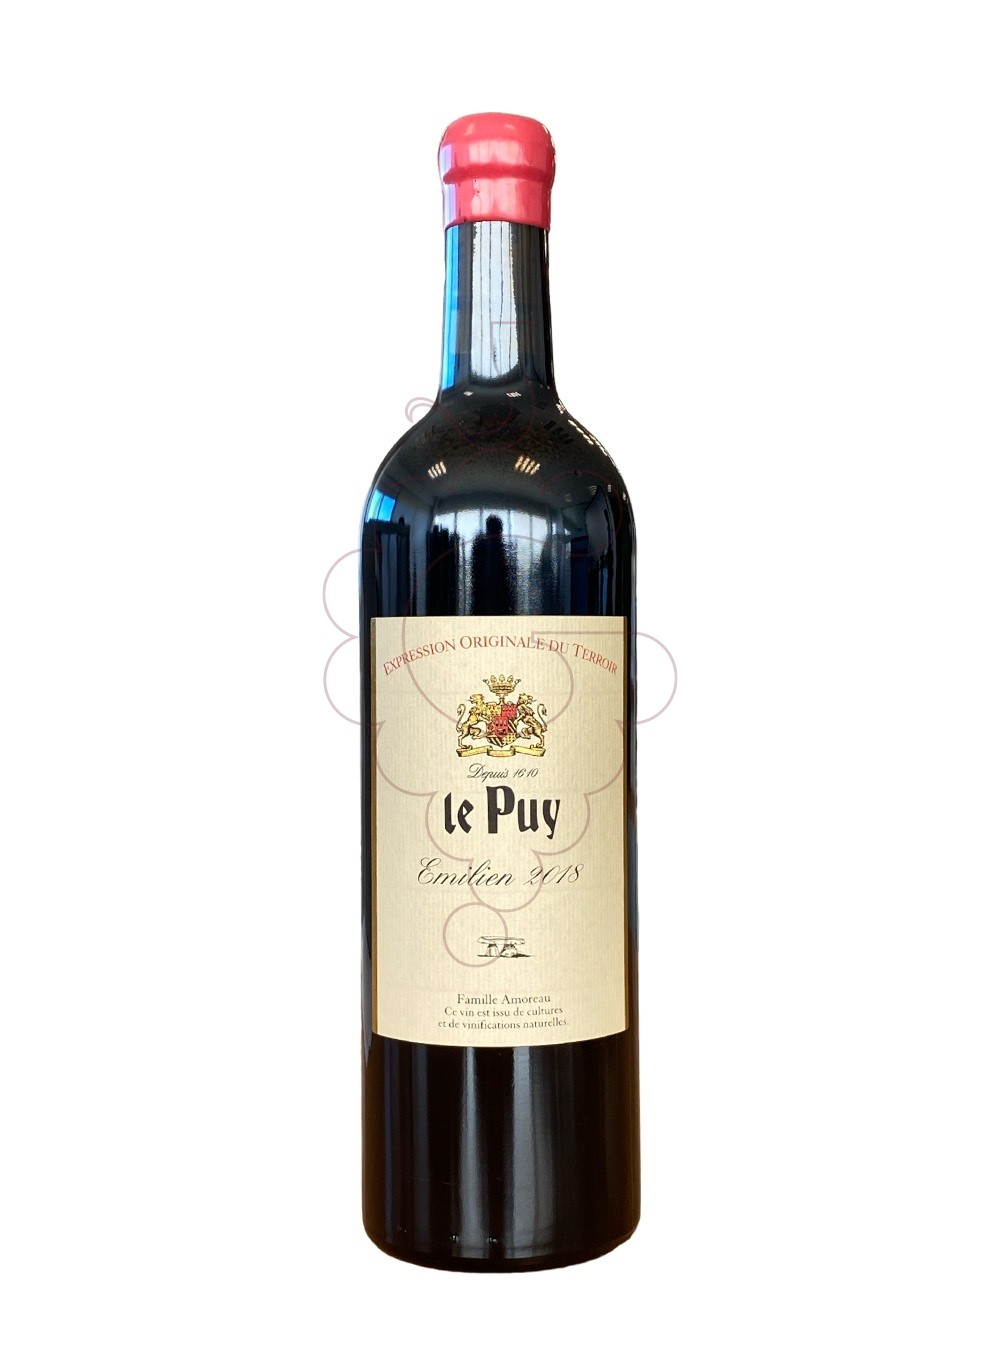 Photo Le puy emilien 2018 75 cl red wine